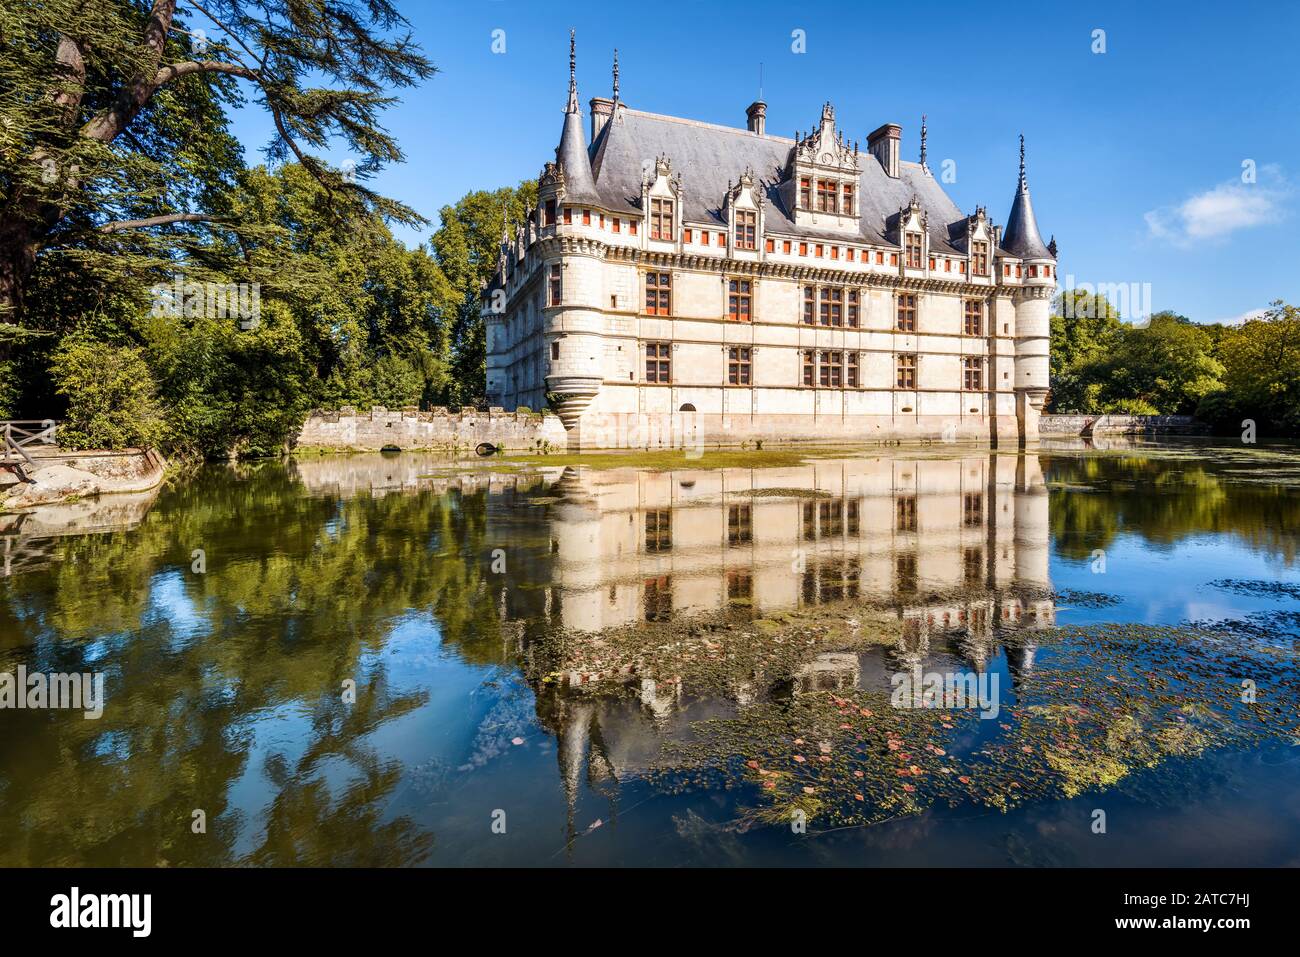 Il castello di Azay-le-Rideau, Francia. Questo castello si trova nella Valle della Loira, è stato costruito dal 1515 al 1527, uno dei primi Rinascimento francese Foto Stock